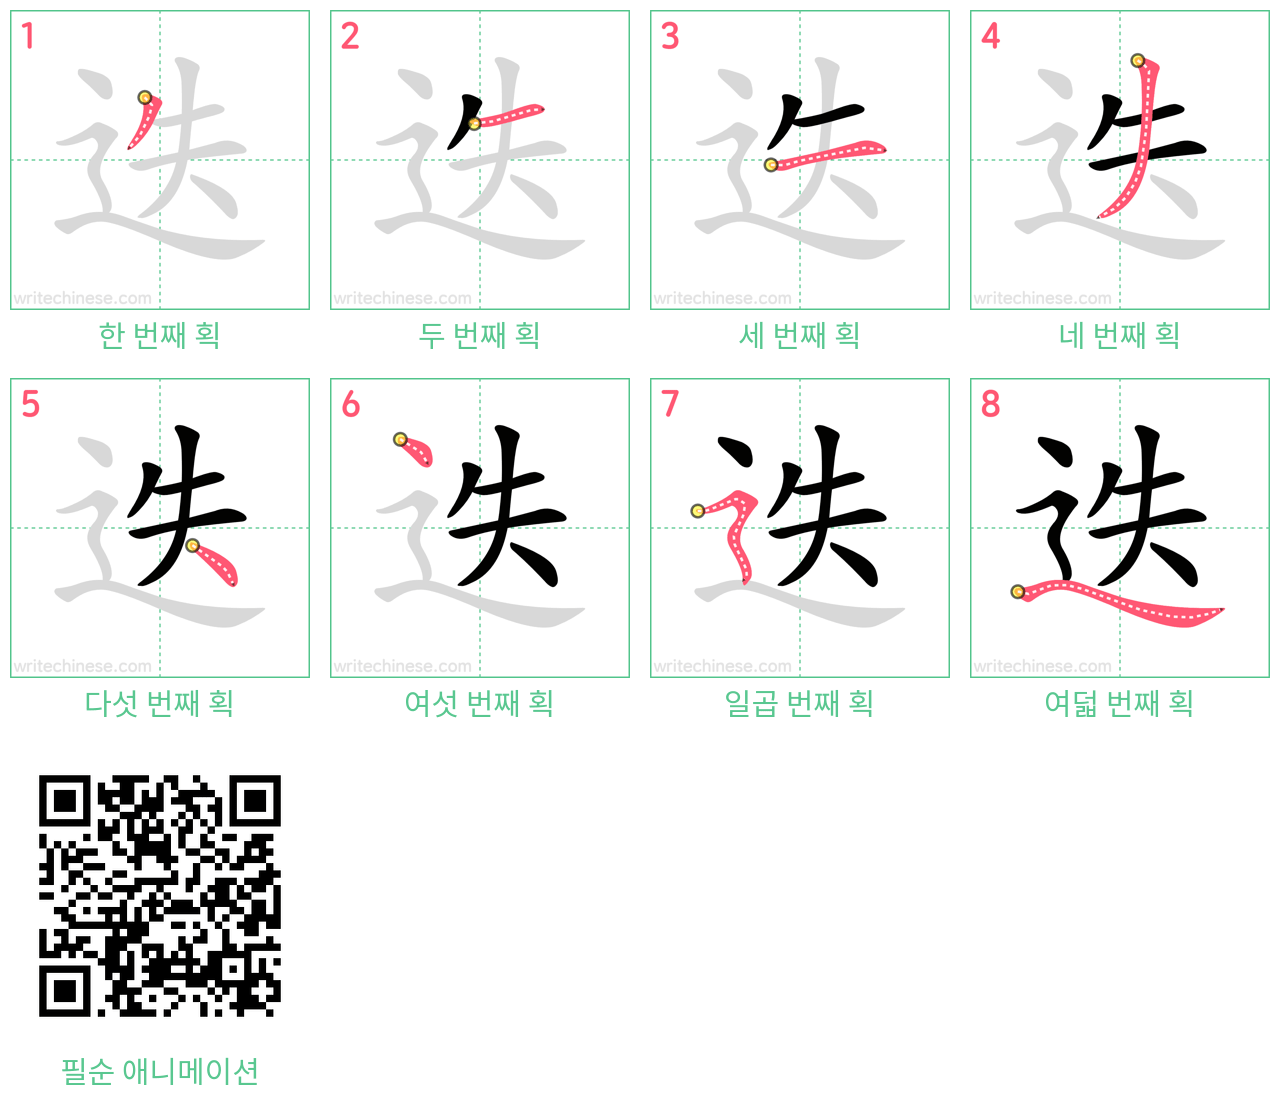 迭 step-by-step stroke order diagrams